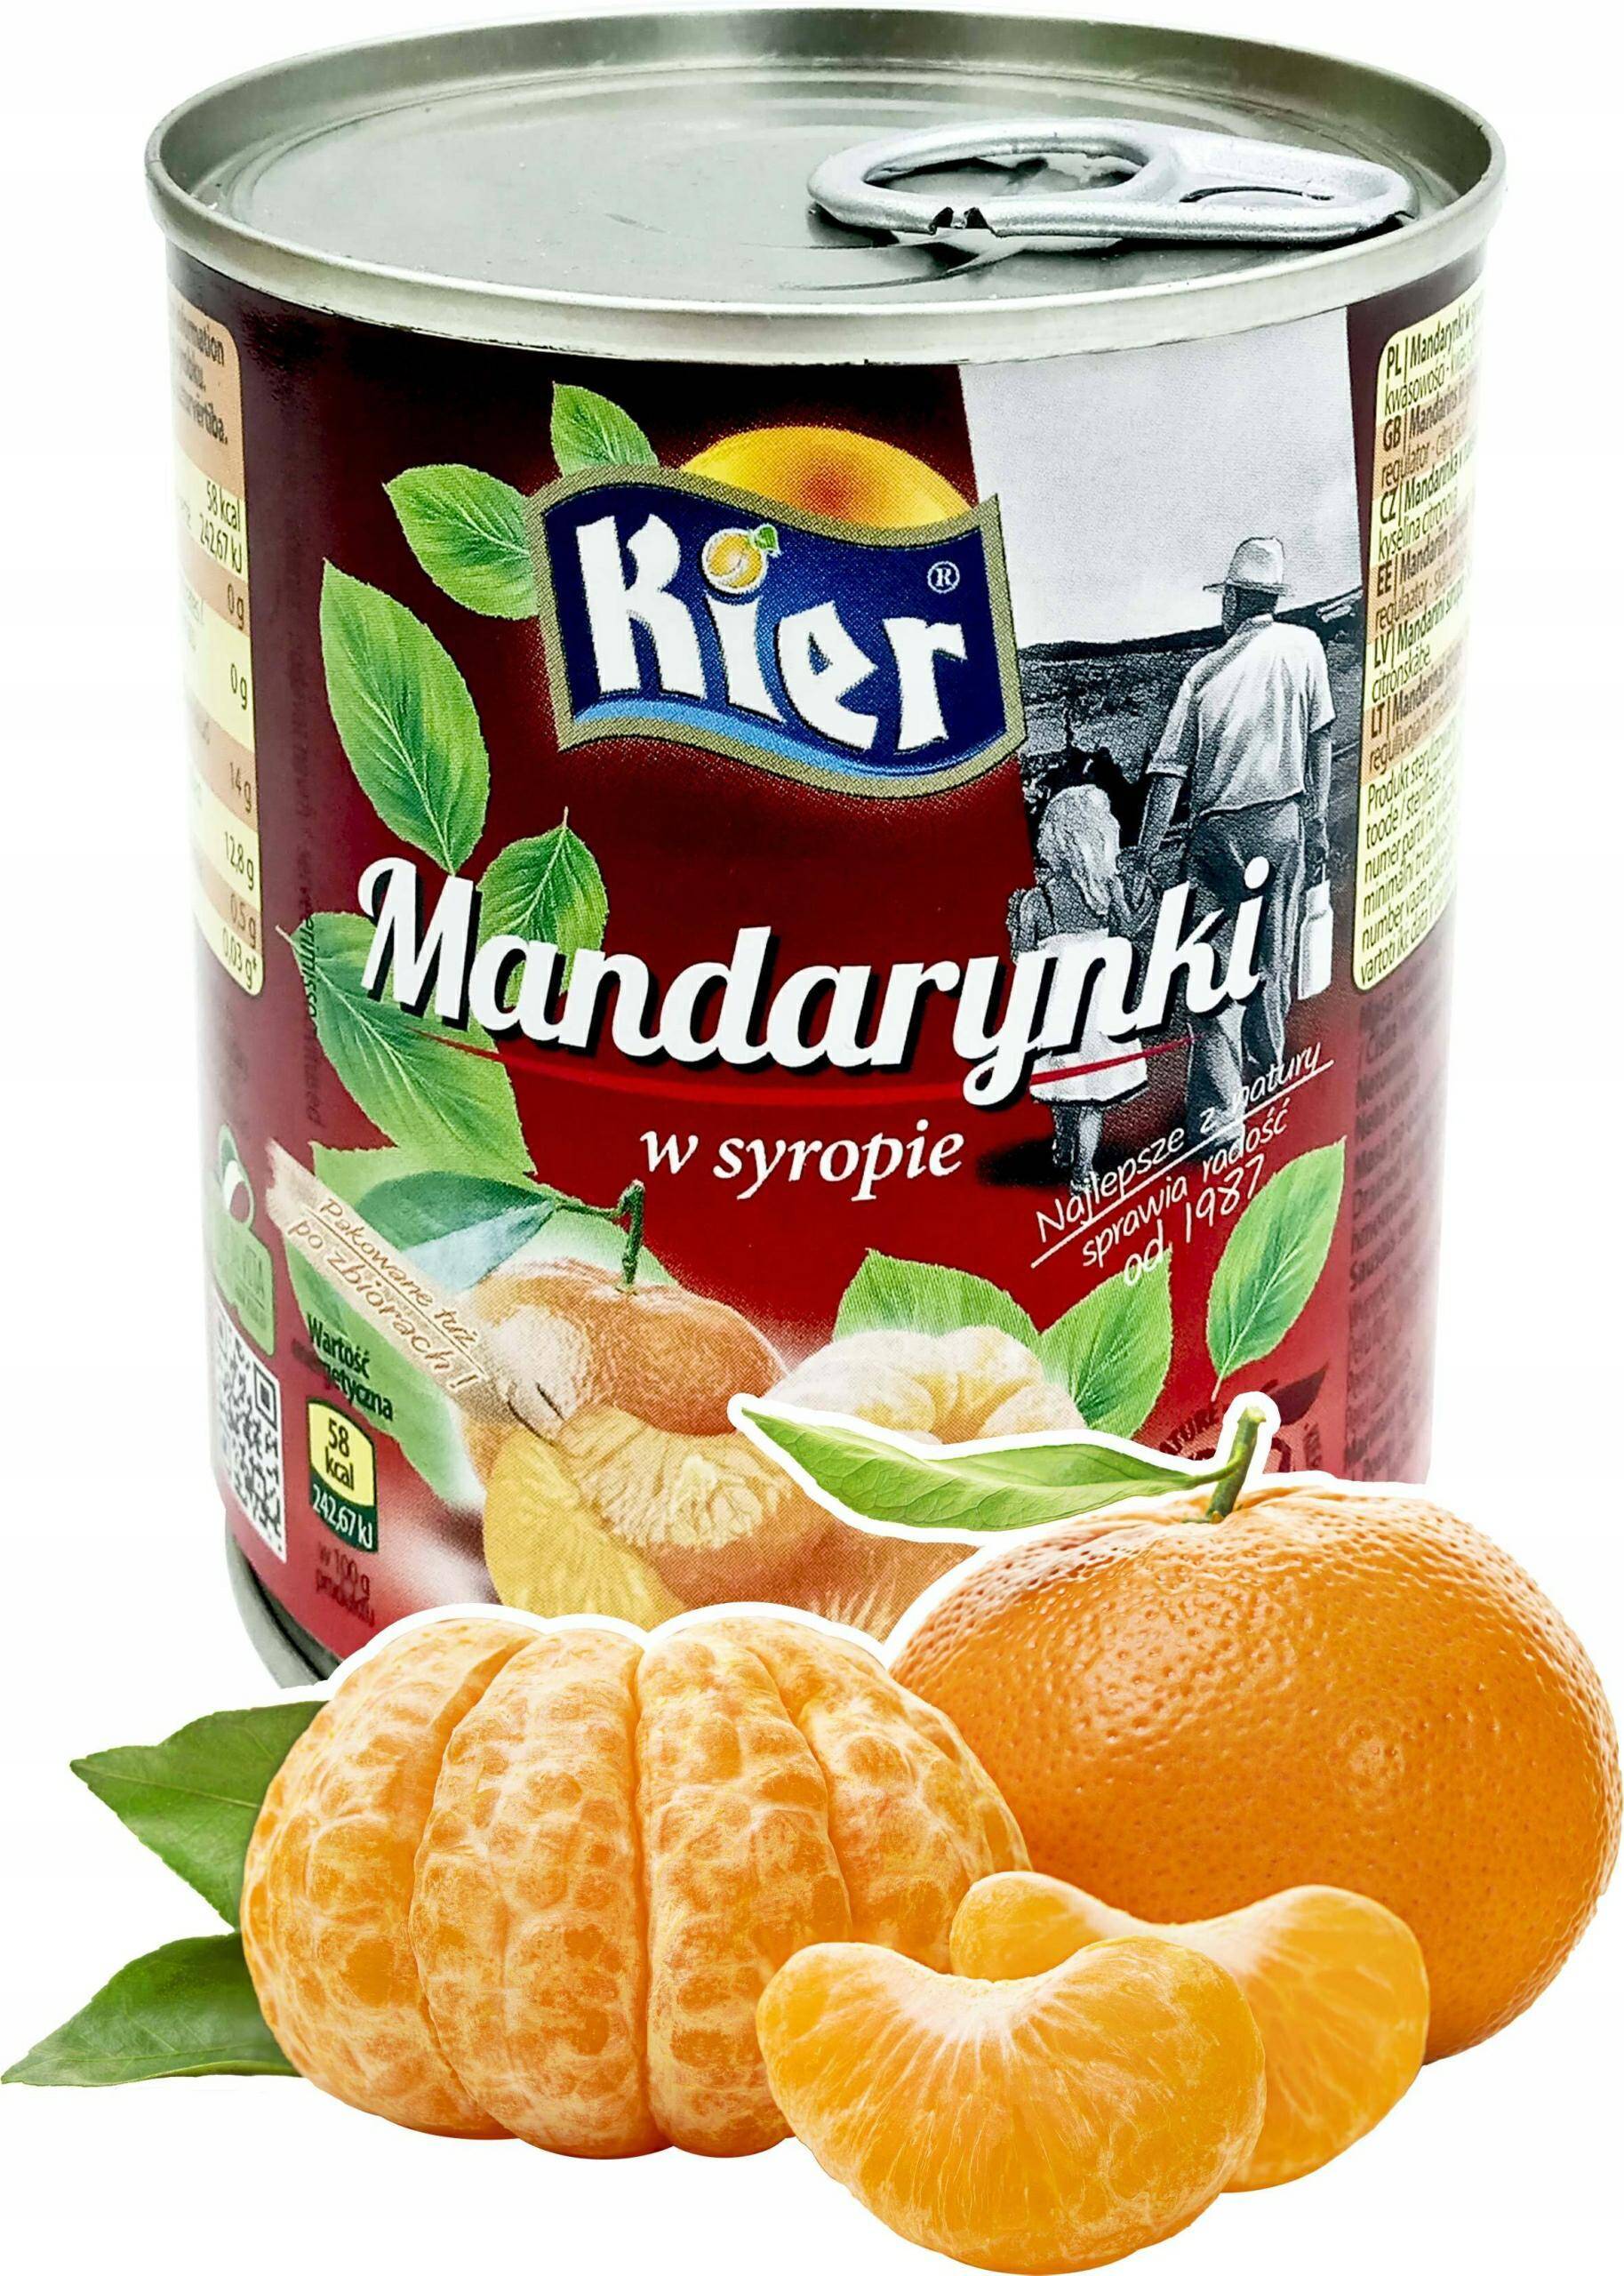 KIER Mandarynka 312g*24.